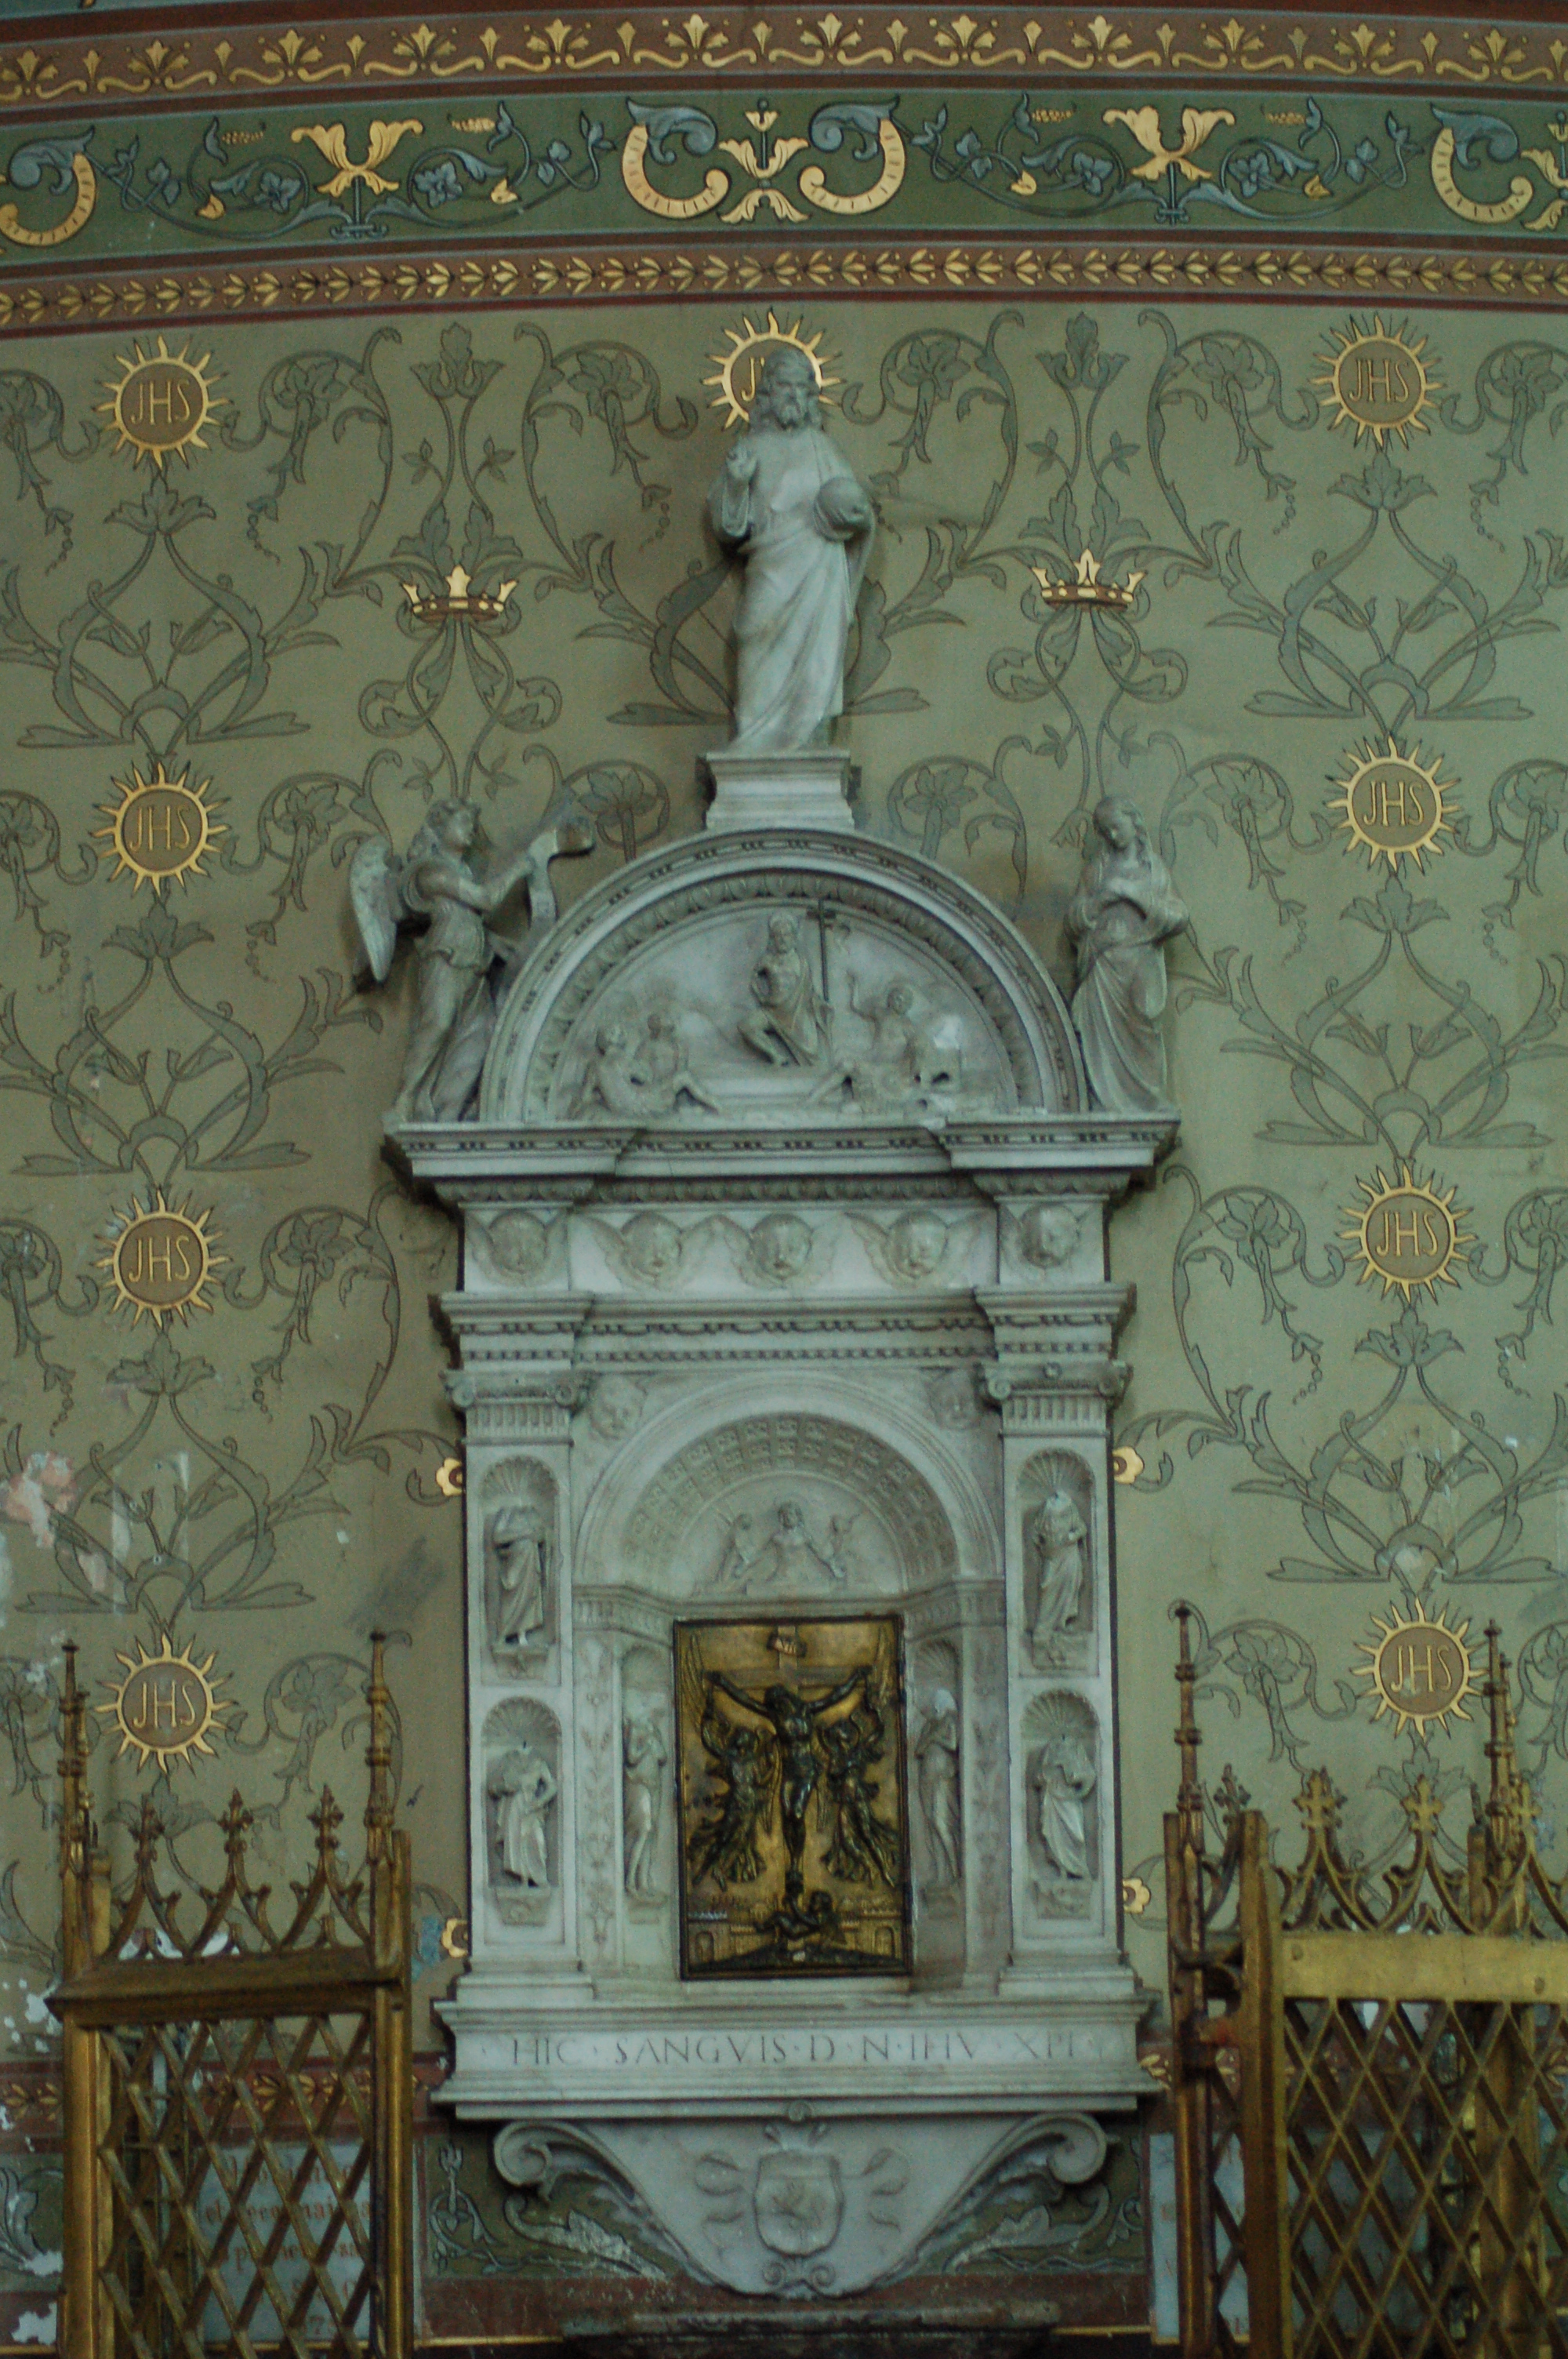 il fut sculpté en 1507 et placé en face de la chapelle de la Vierge pour recevoir la relique du Précieux-Sang du Christ, contenu dans deux tubes...